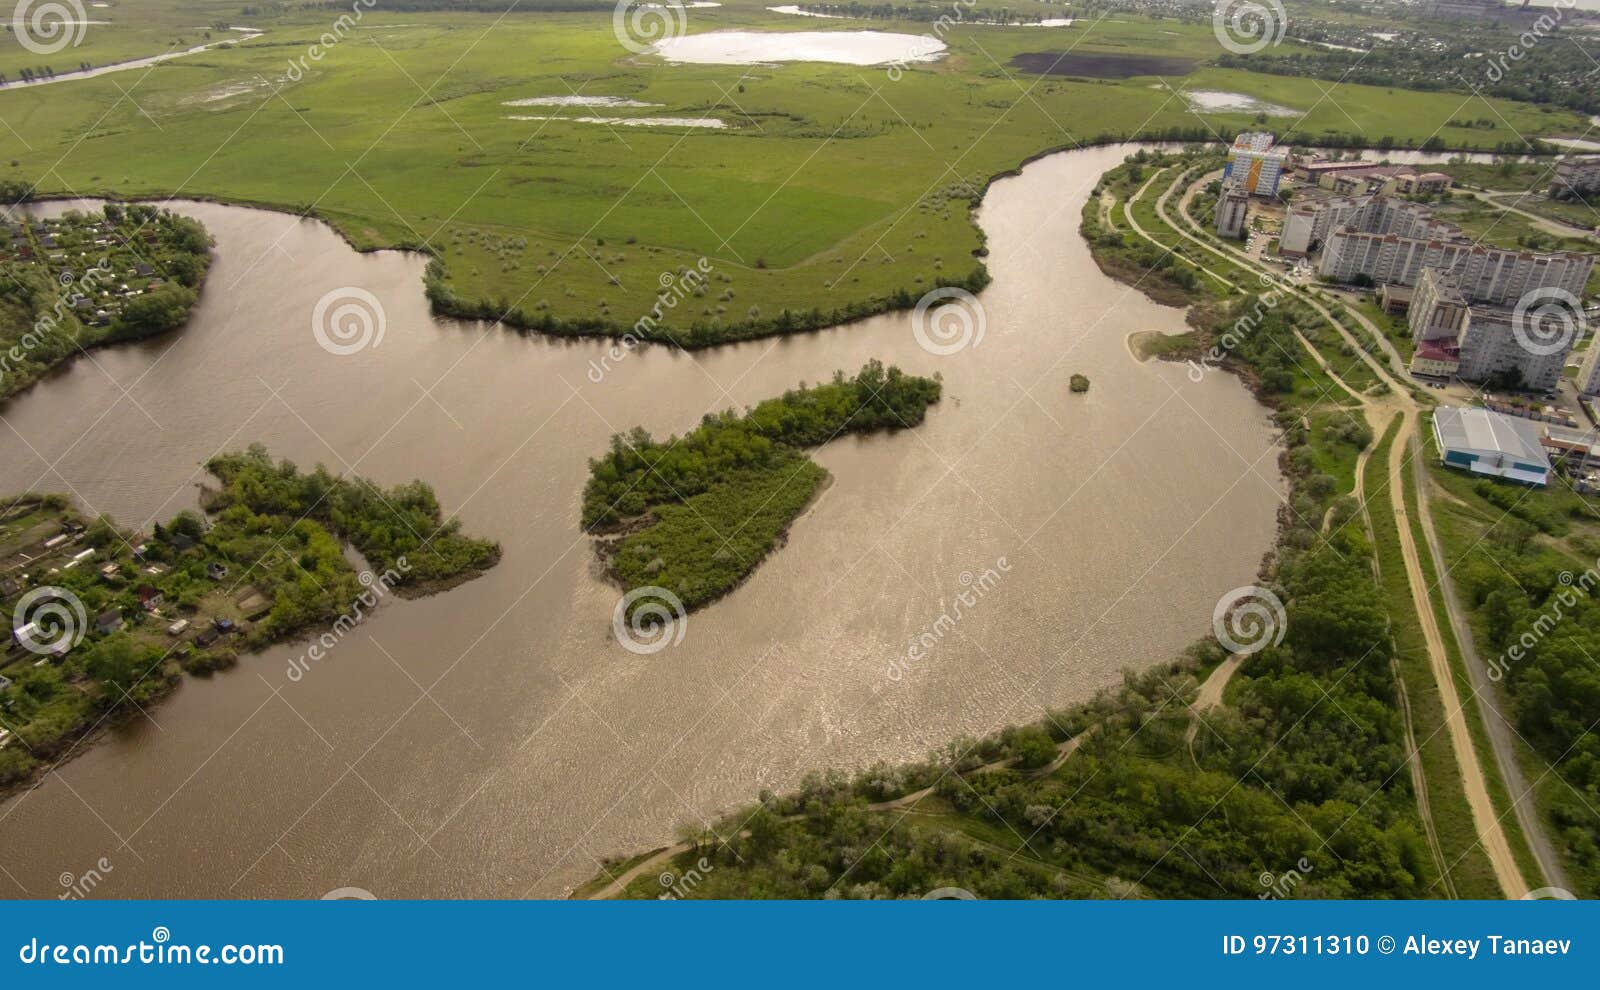 Есть ли река тобол. Река Тобол Курган. Река Тобол Костанай. Тобол (река) река. Река Тобол Курганская область.